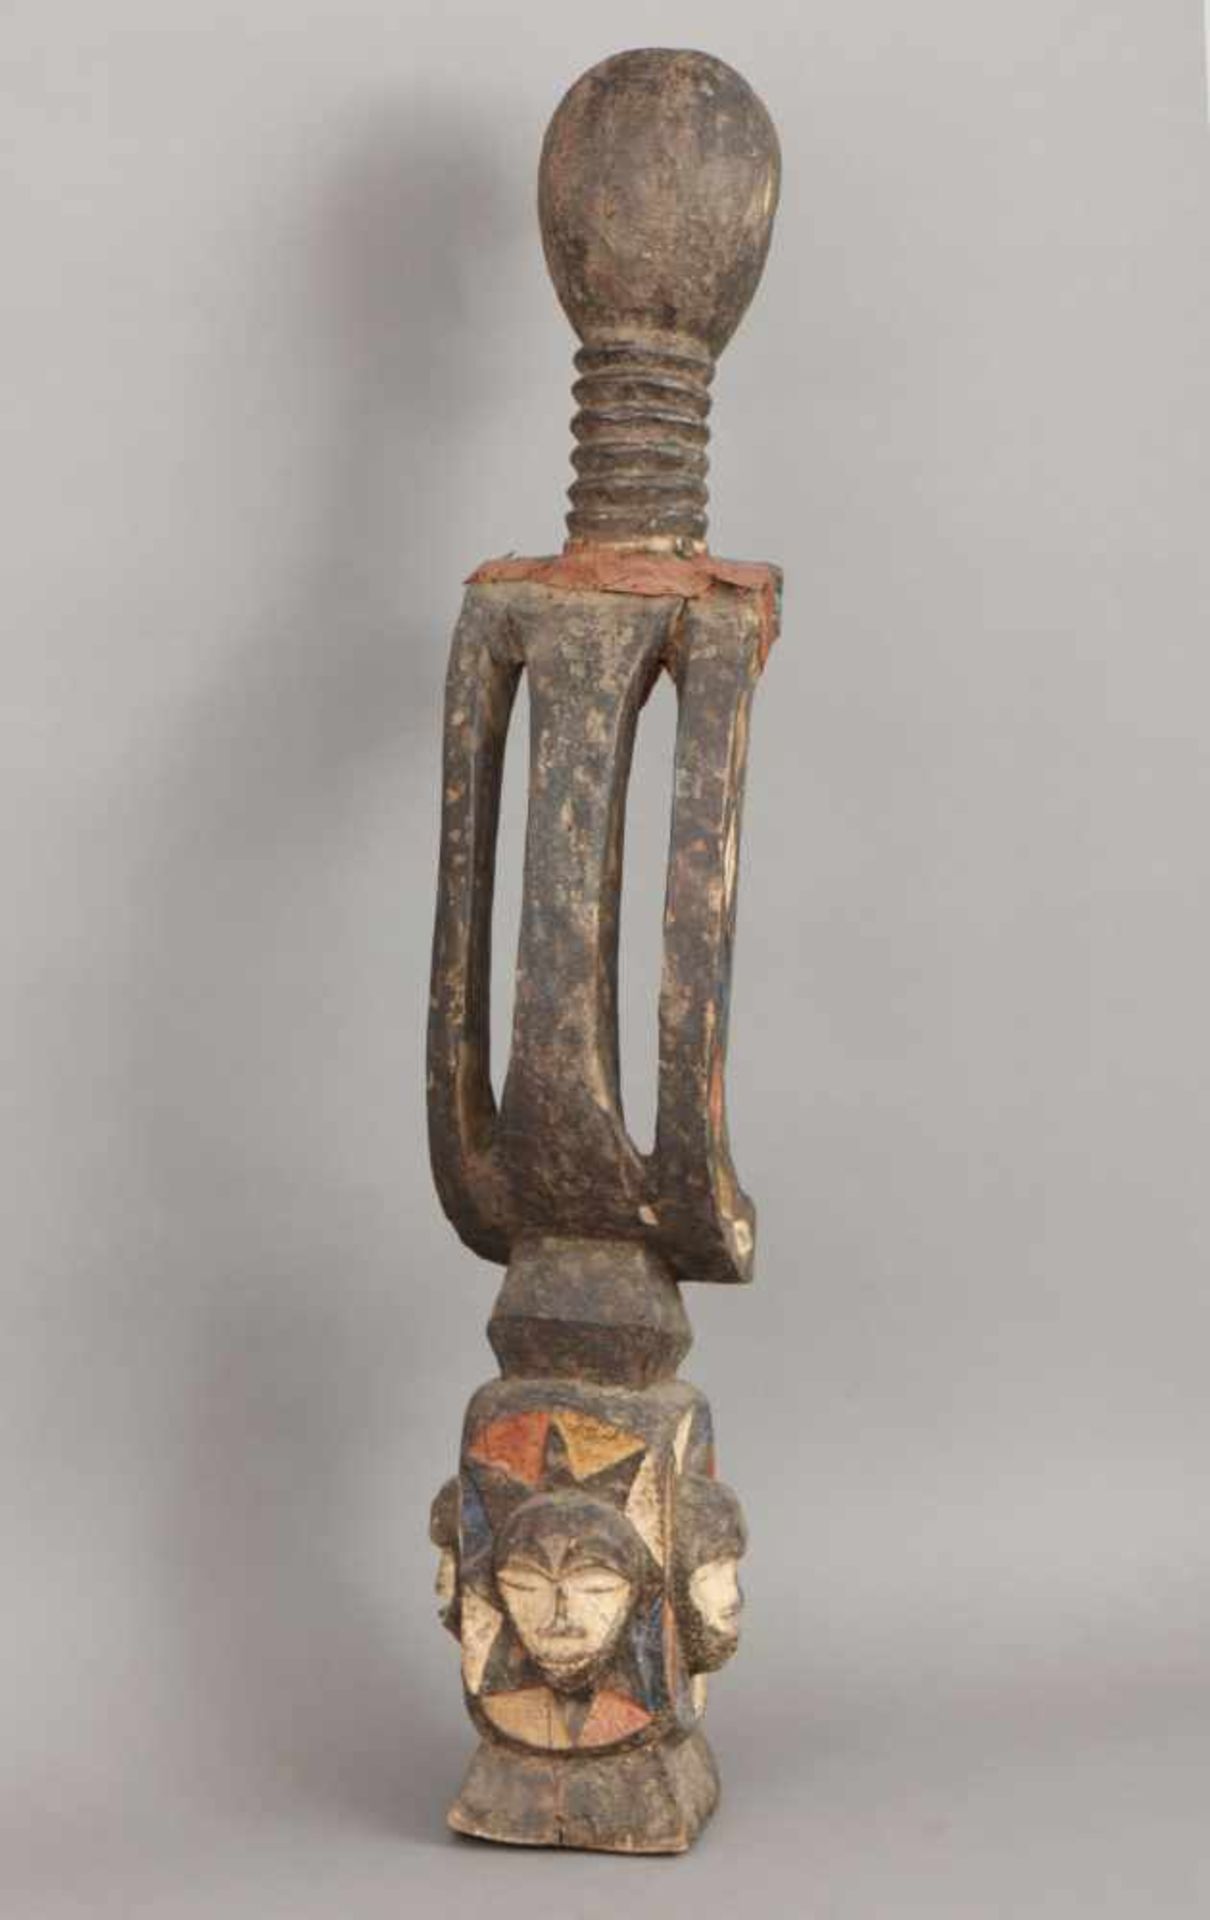 Afrikanische Ritual-/Ahnenfigur Holz, geschnitzt und geschwärzt, in Partien rot-weiß (Kaolin) - Image 3 of 4